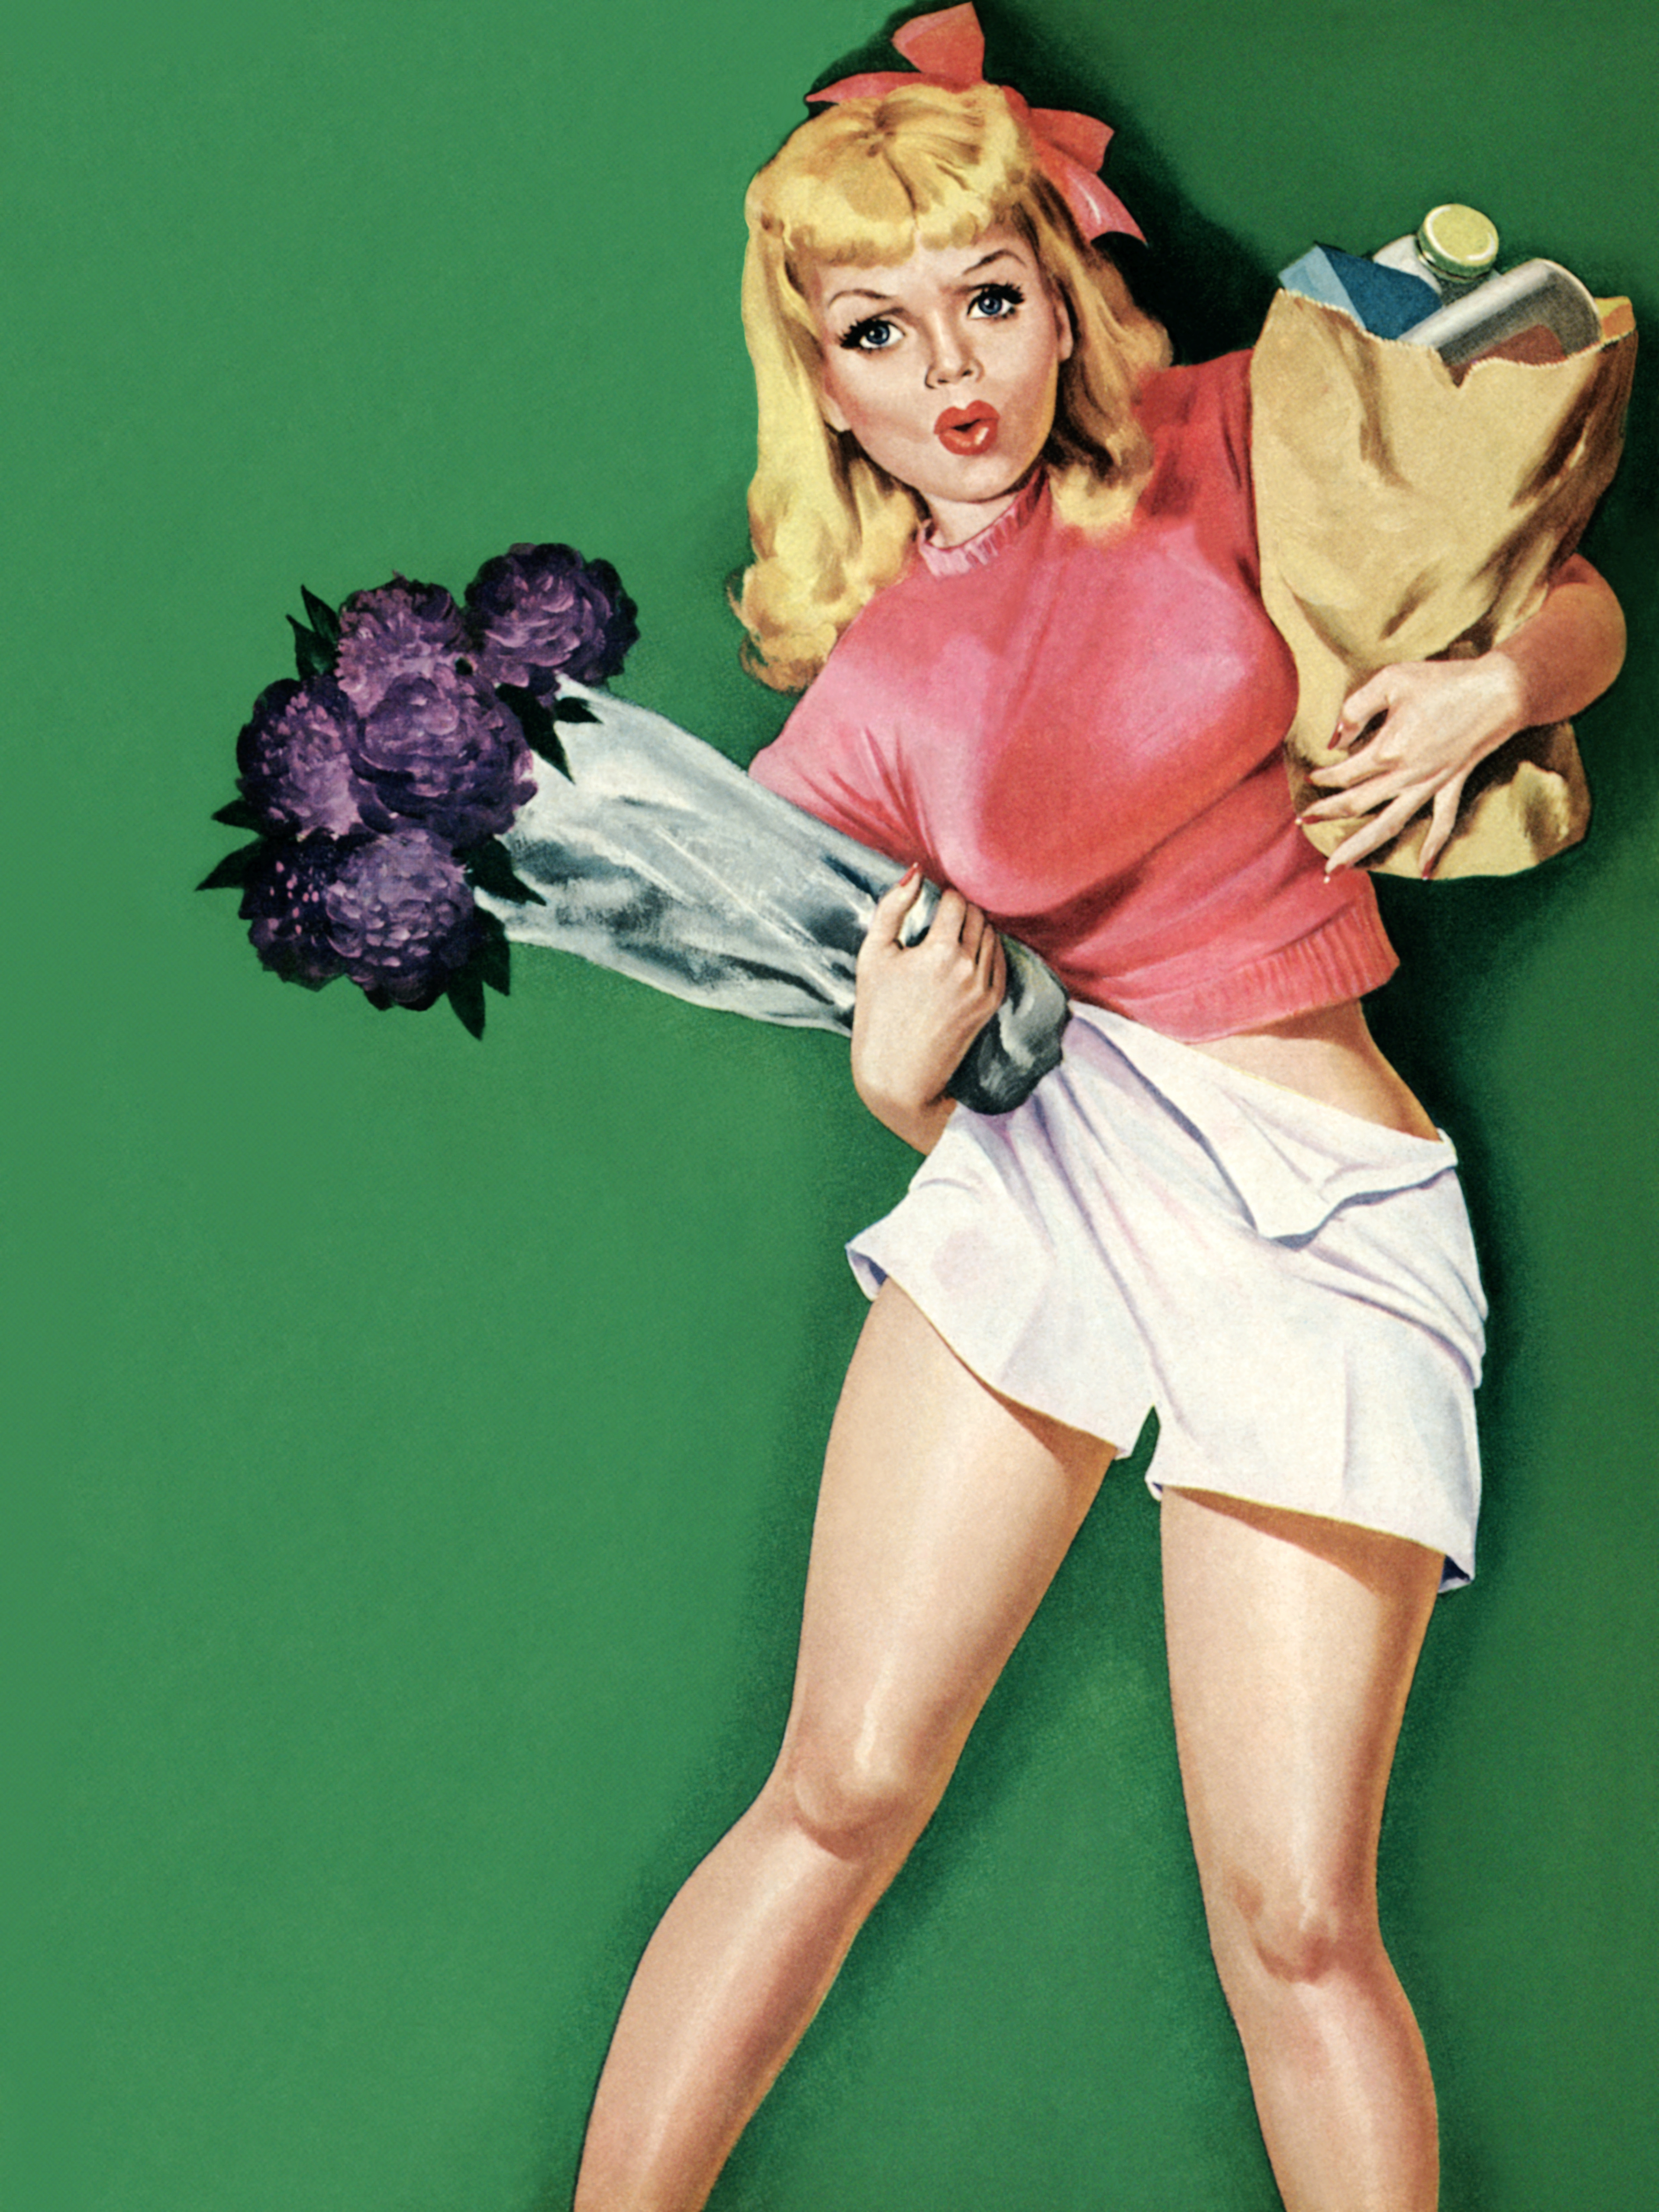 Вход пин ап pinlive. Постеры в стиле 50-х годов. Девушка с плакатом. Пин ап девушки. Американские плакаты с девушками.